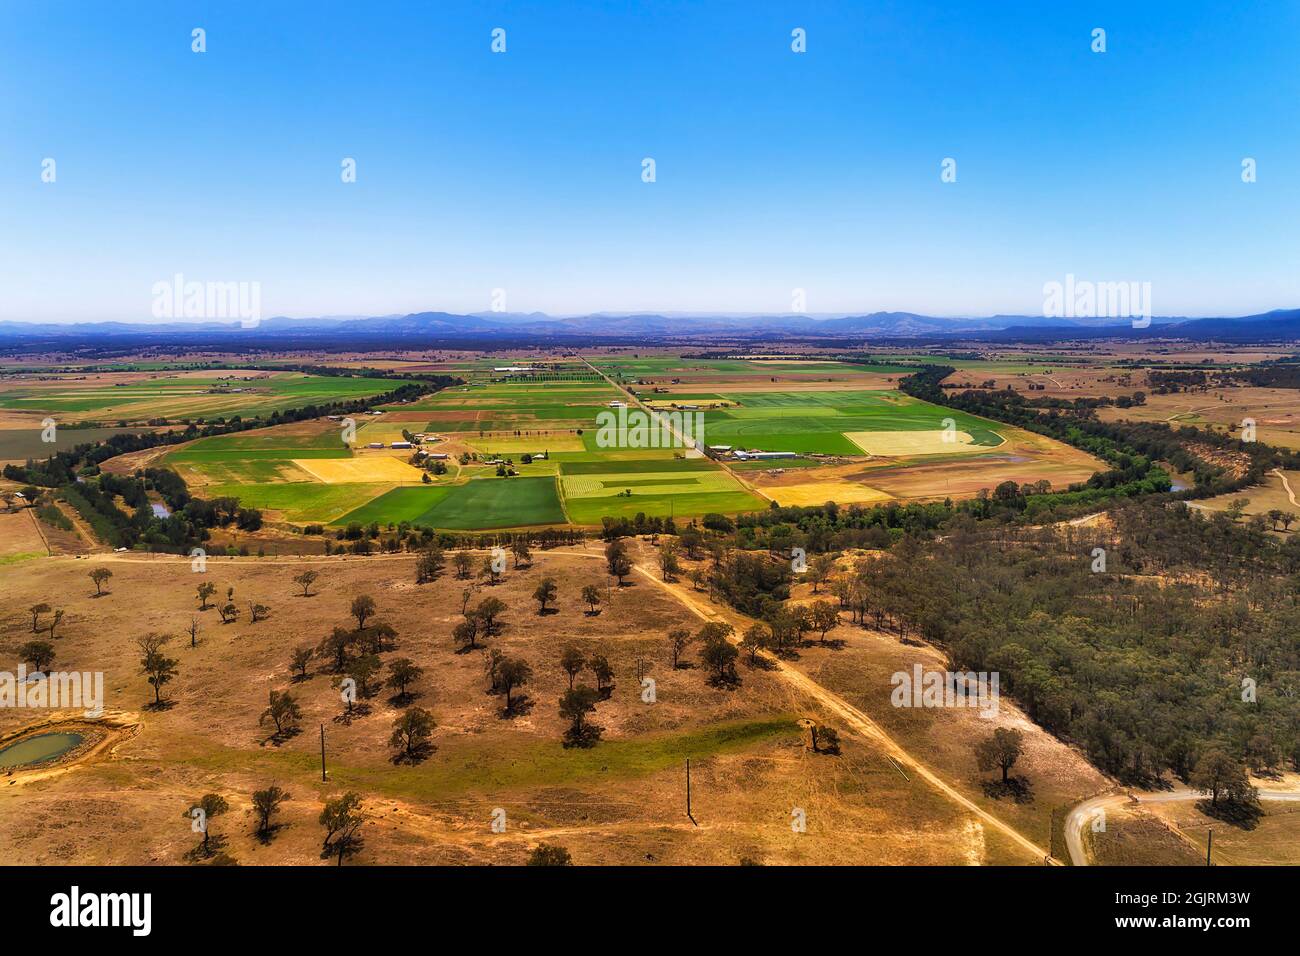 Hunter fiume in una forma ad anello intorno a campi agricoli coltivati e fattorie in un'ampia valle della regione di cacciatore - paesaggio panoramico aereo, Australia. Foto Stock